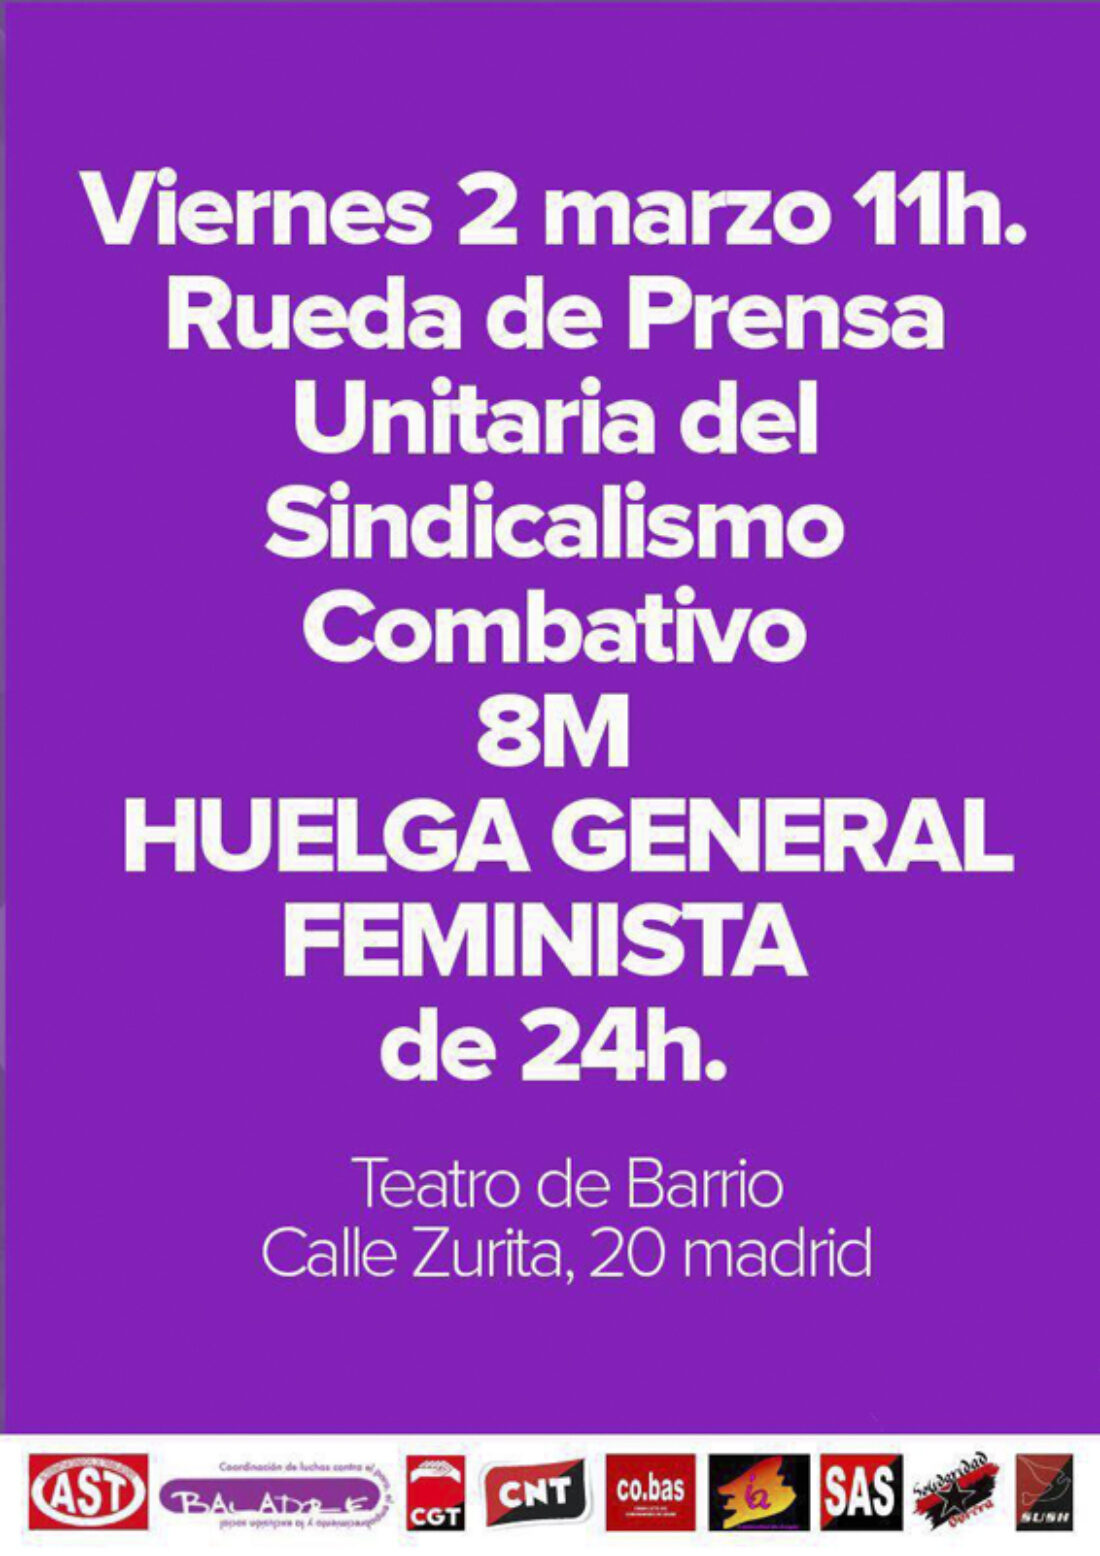 El Bloque Combativo explica las razones para ir a la Huelga General Feminista el próximo 8 de marzo